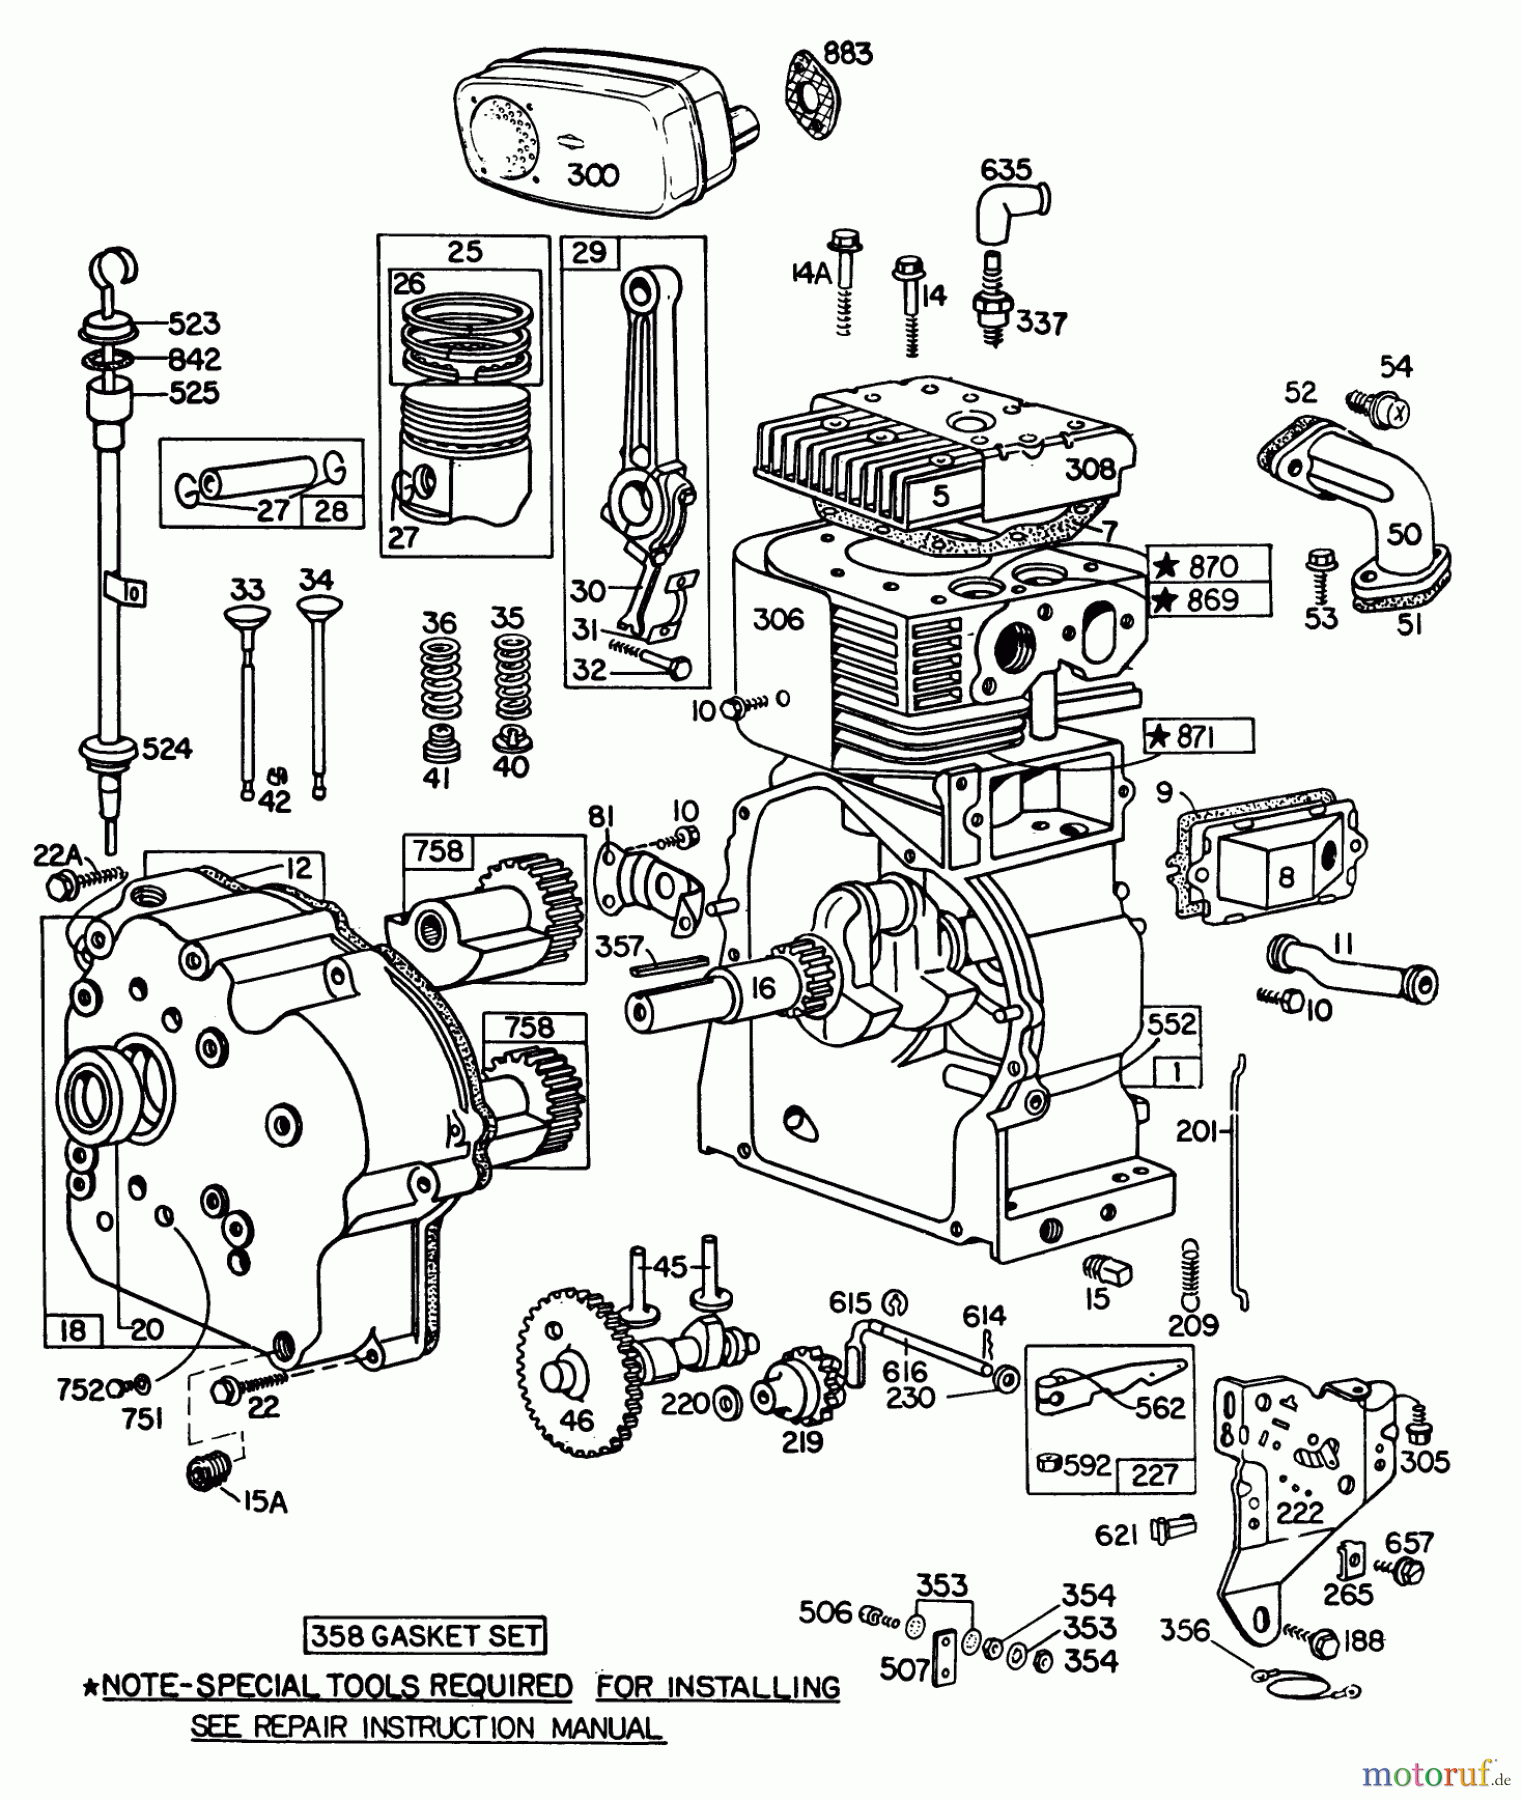  Toro Neu Snow Blowers/Snow Throwers Seite 1 38095 (1132) - Toro 1132 Snowthrower, 1980 (0000001-0999999) ENGINE BRIGGS & STRATTON MODEL NO. 252416 TYPE NO. 0190-01 #1